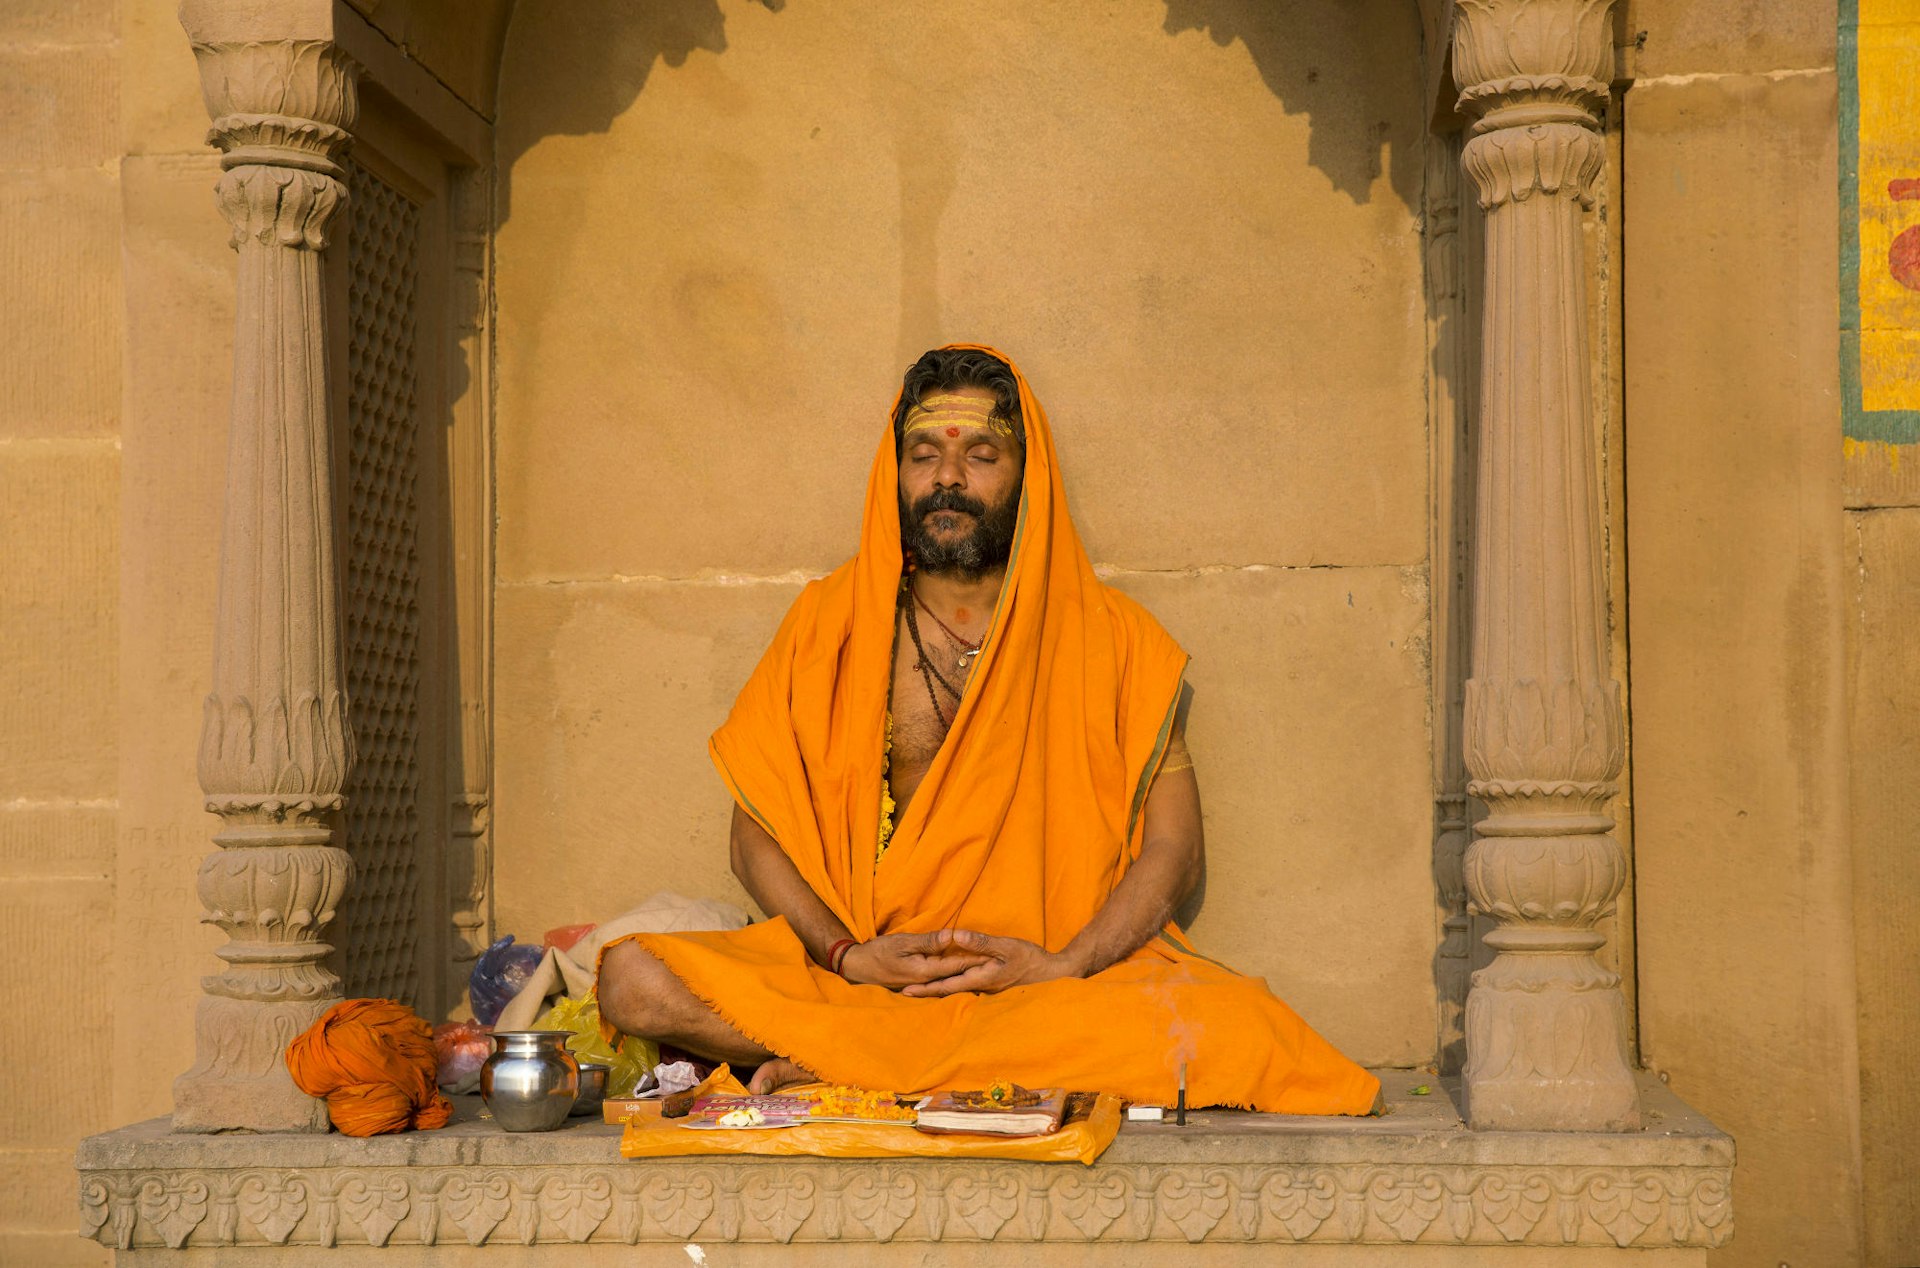 A sadhu (holy man) mediates in the warm sunshine